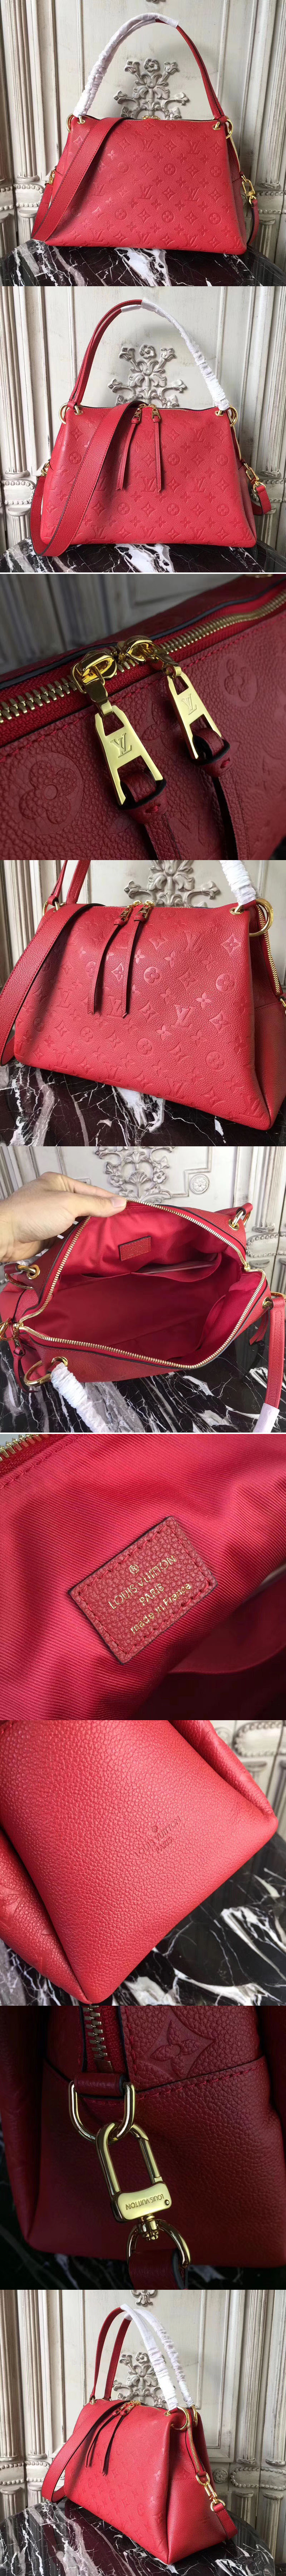 Replica Louis Vuitton m43720 Ponthieu PM Monogram Empreinte Bags Red